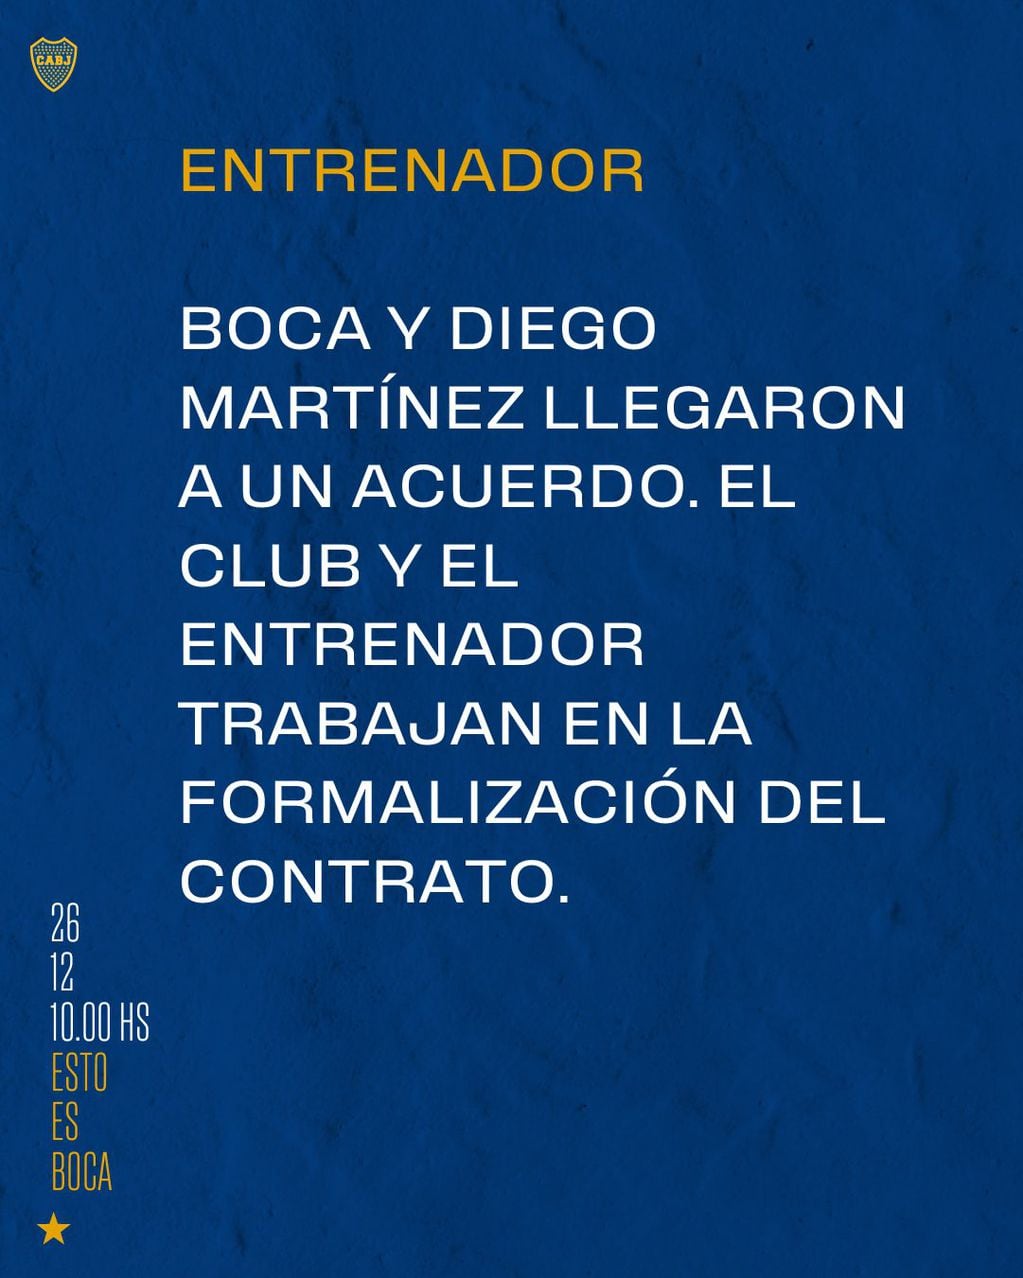 Boca hizo oficial el acuerdo con Diego Martínez para que sea su nuevo entrenador.